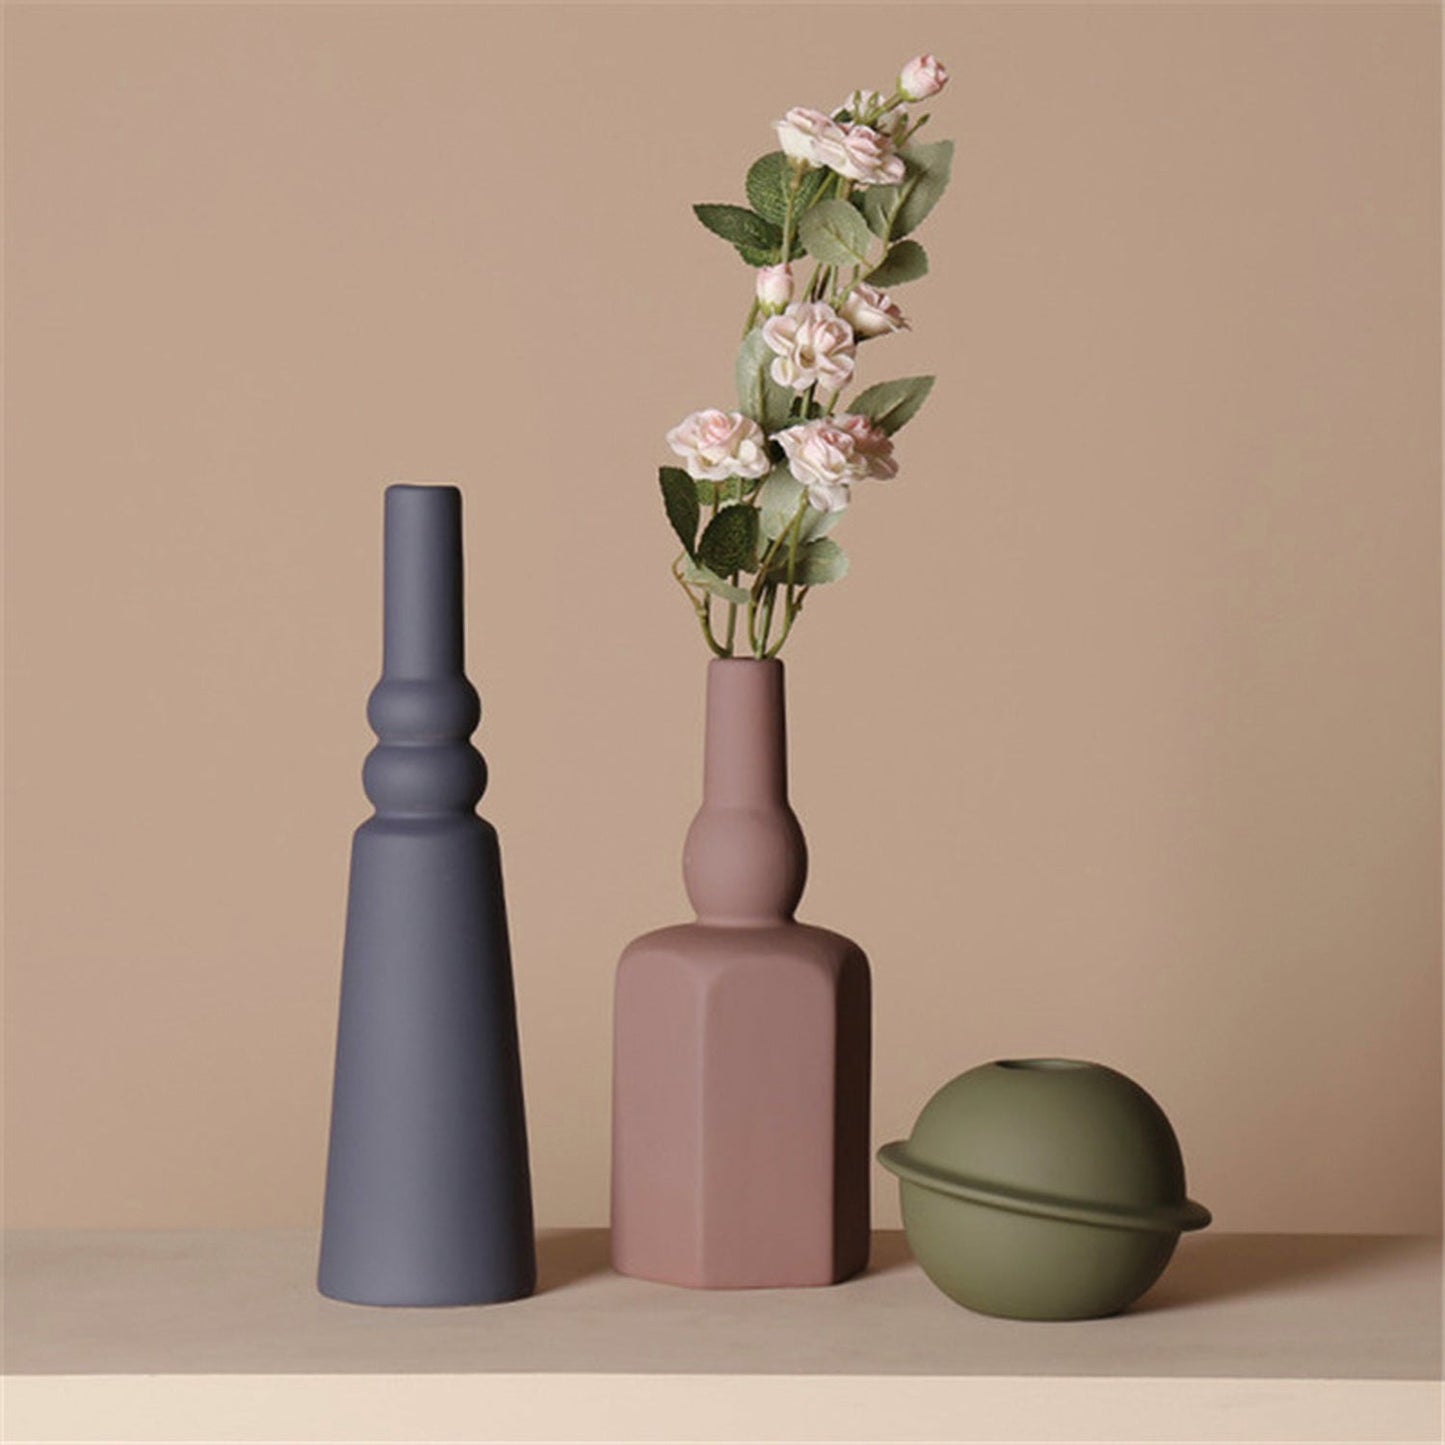 Geometric Ceramic Floral Vase